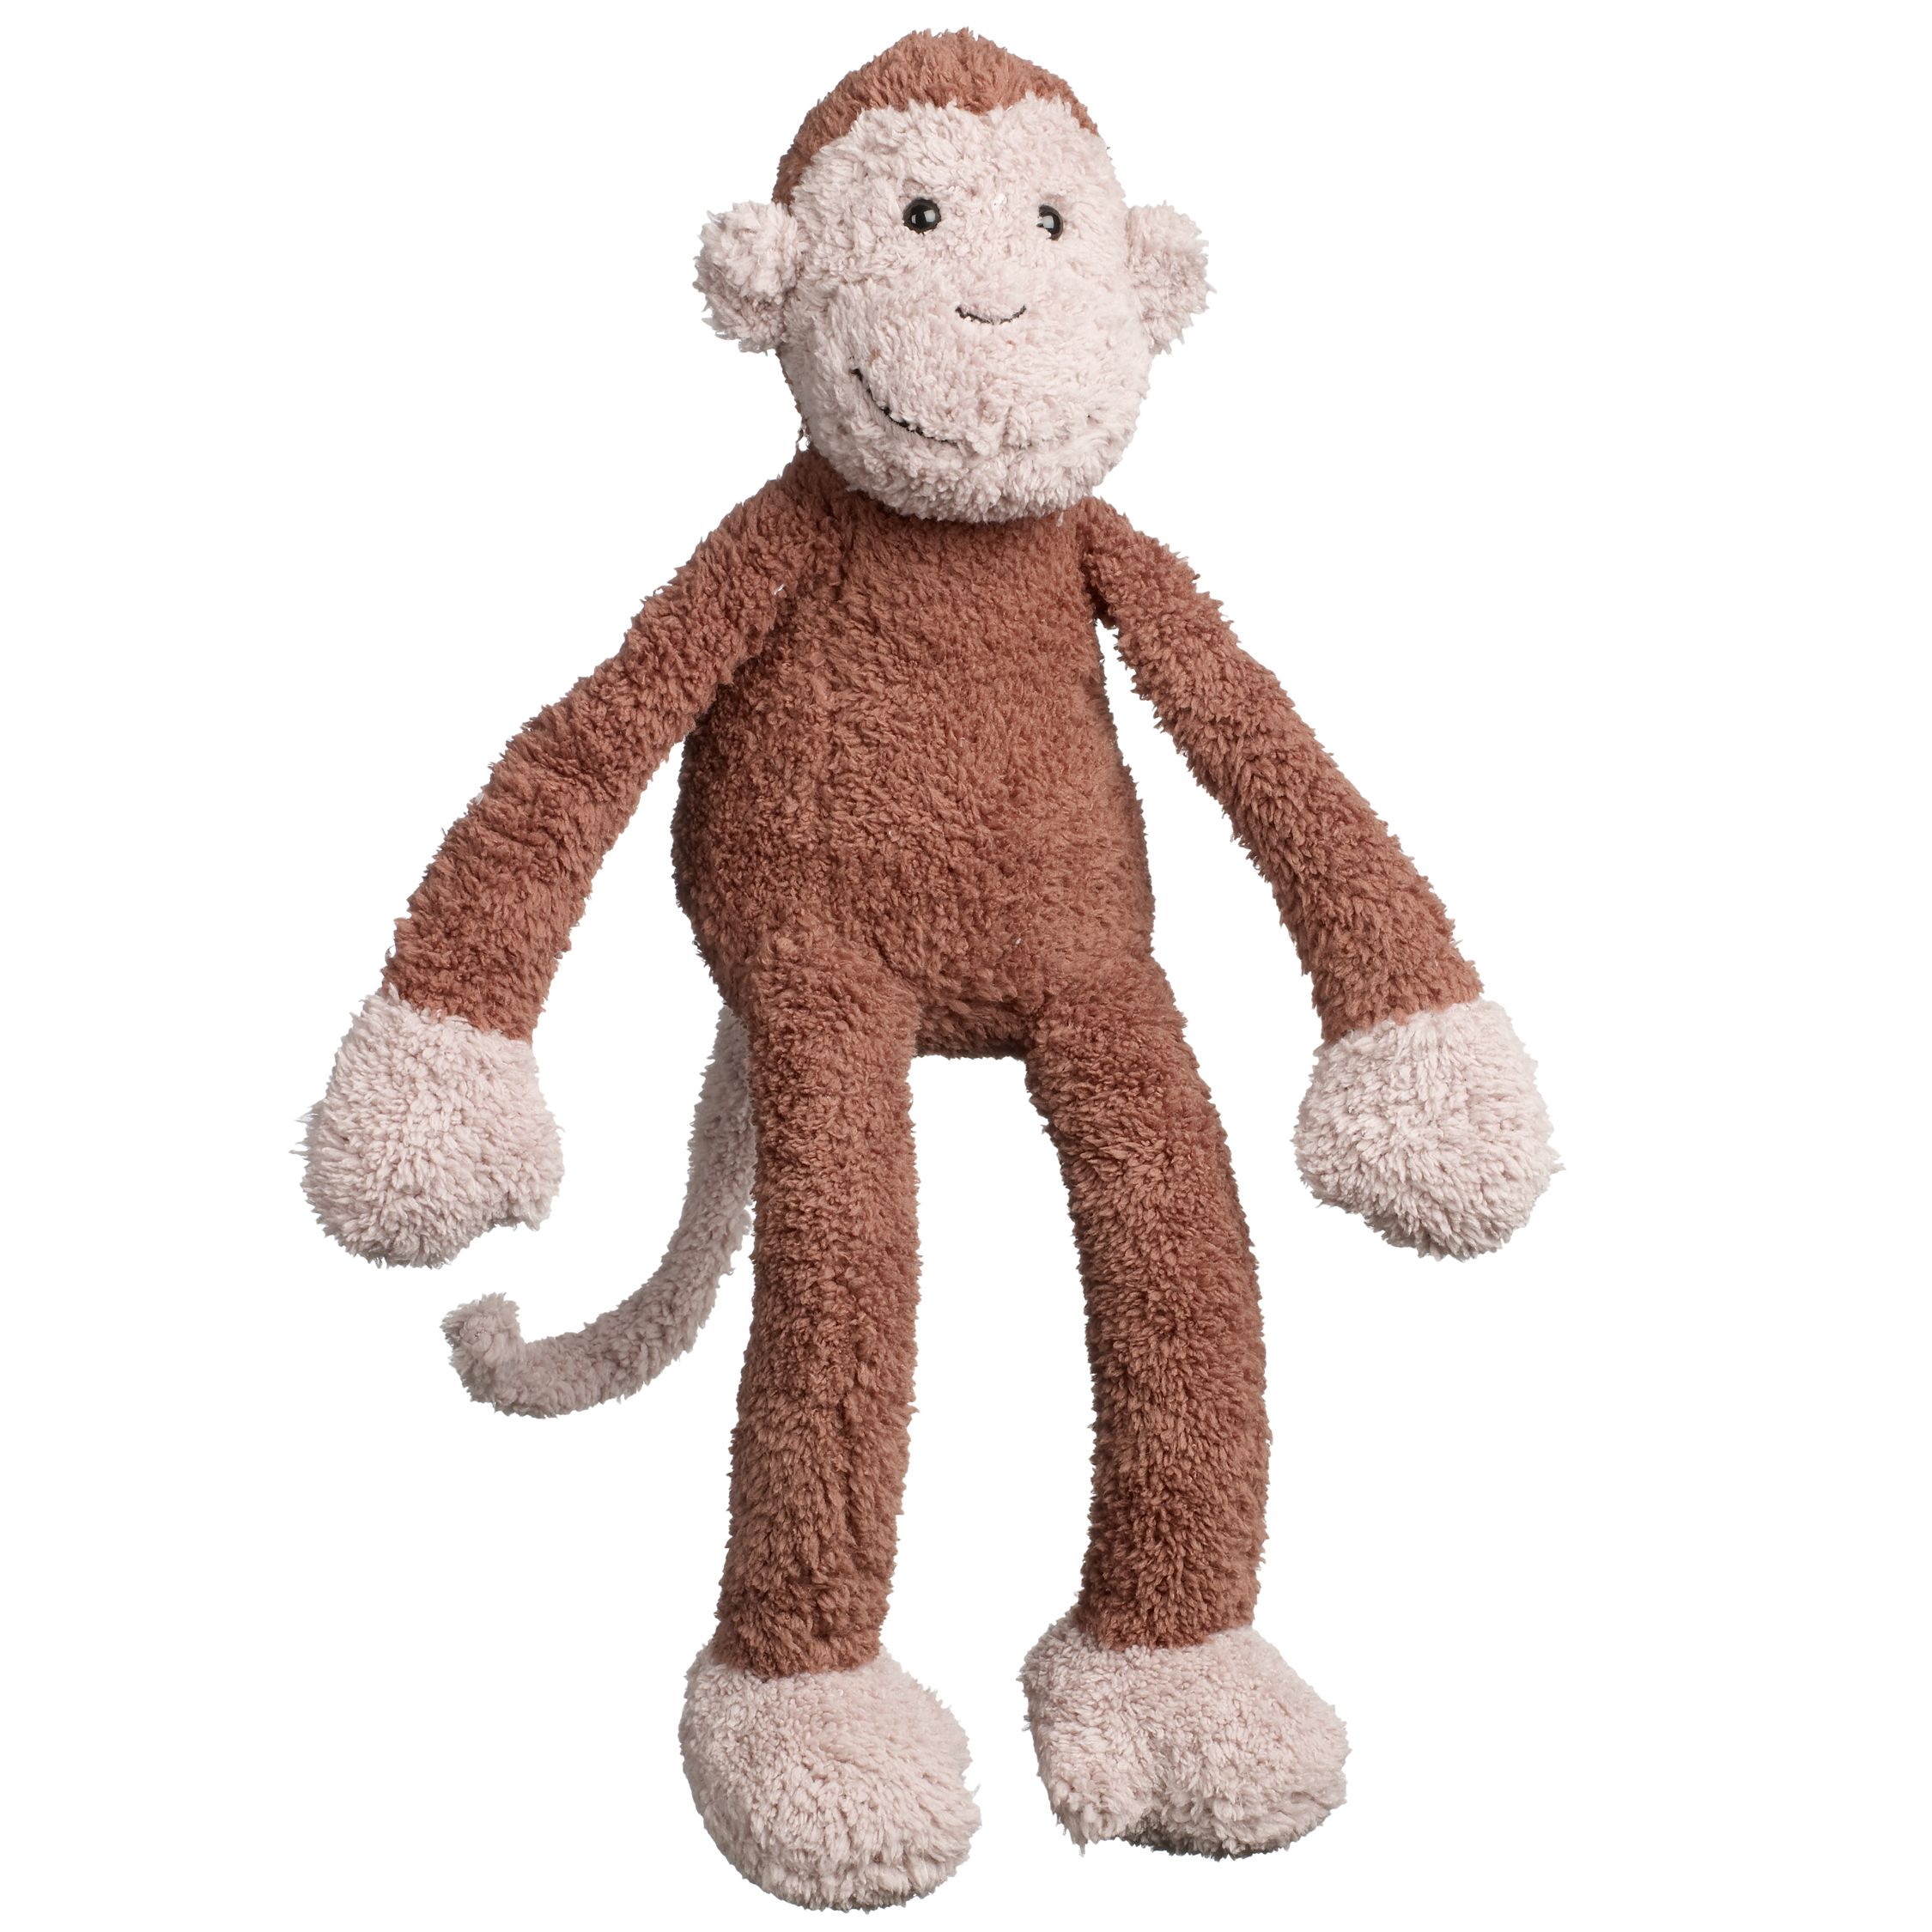 Jellycat Slackajack Monkey Soft Toy at 